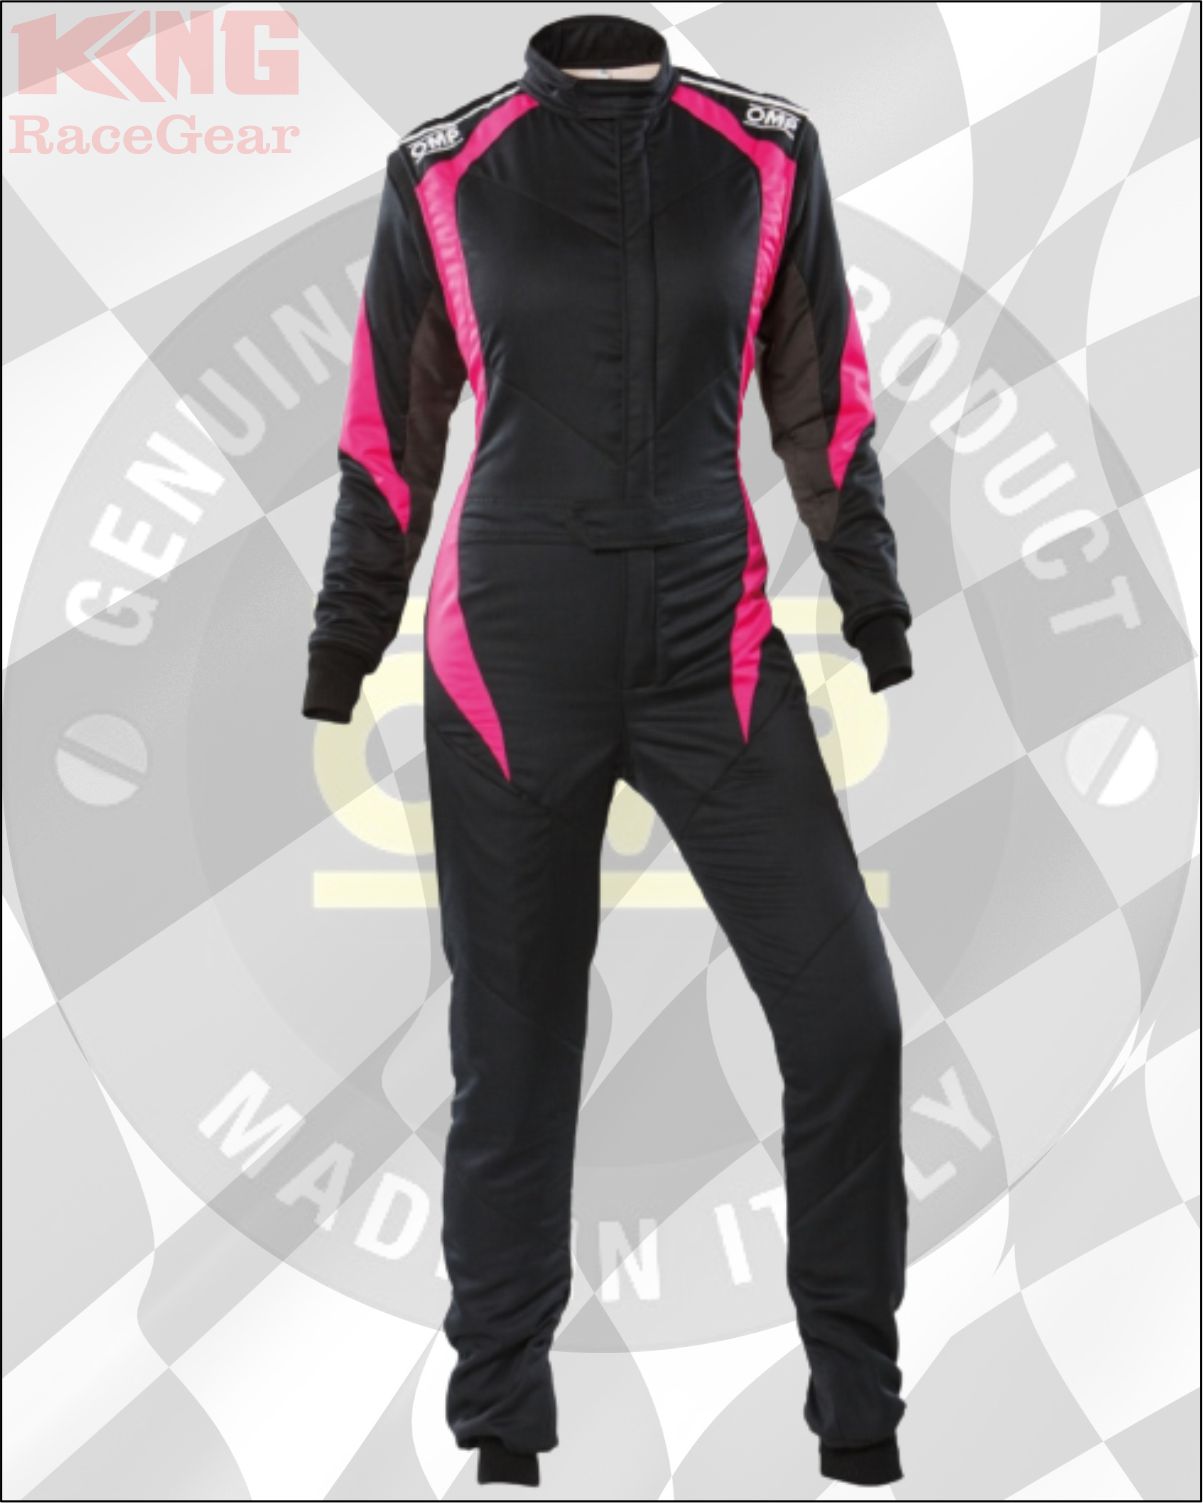 OMP First Elle my2020 FIA Race Suit Black